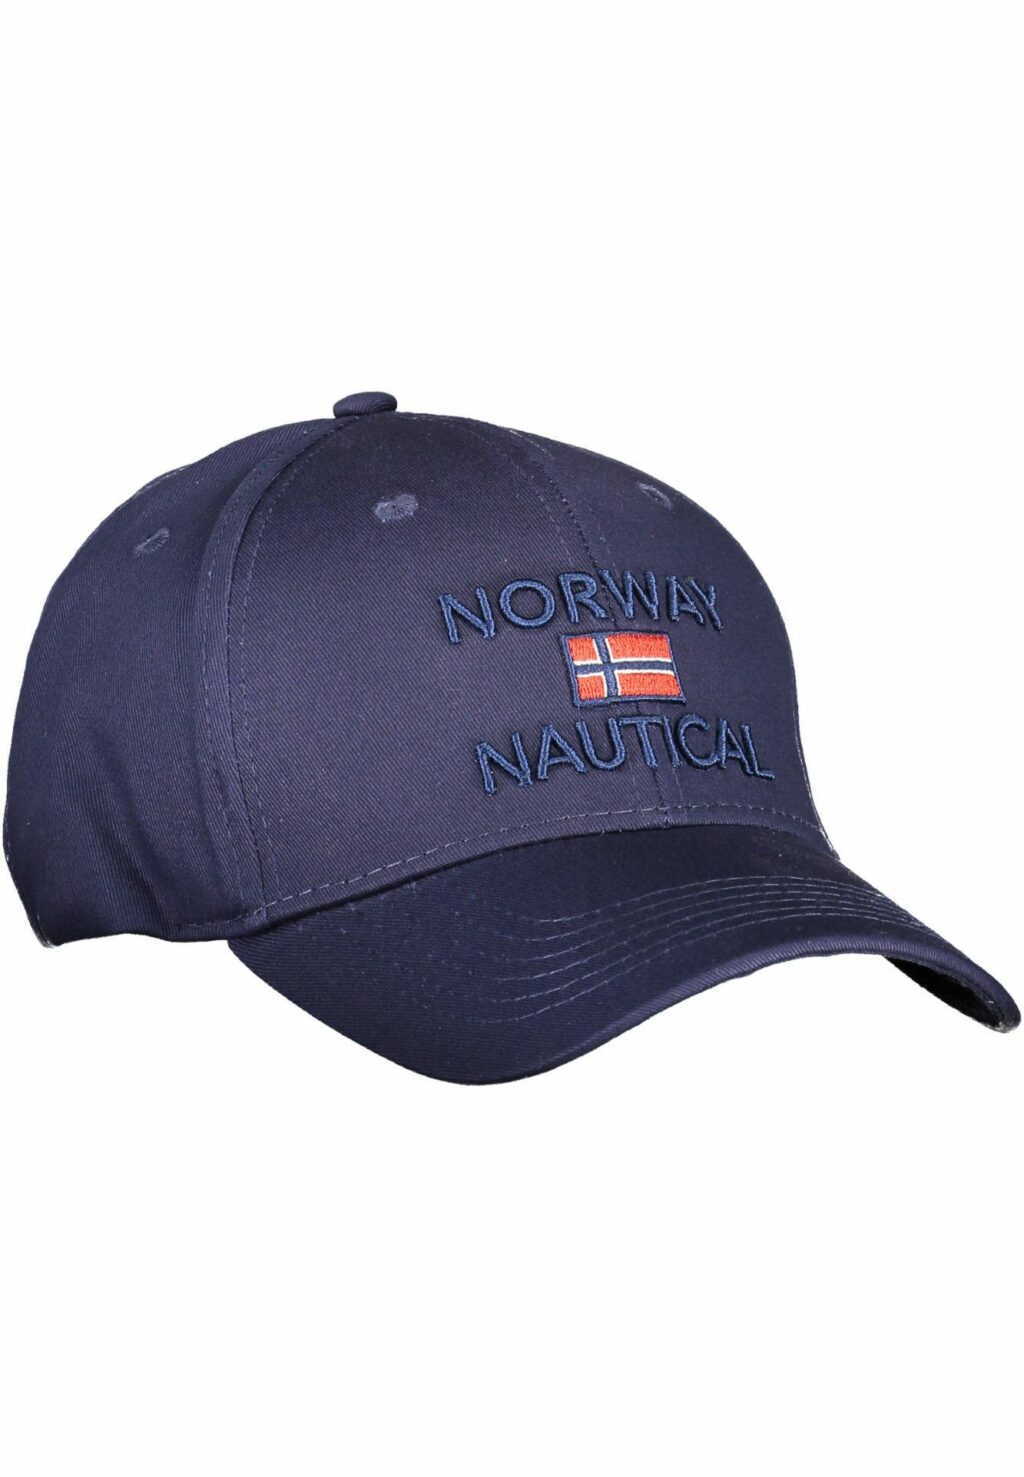 NORWAY 1963 BLUE MEN'S HAT 832001_BLU_BLU